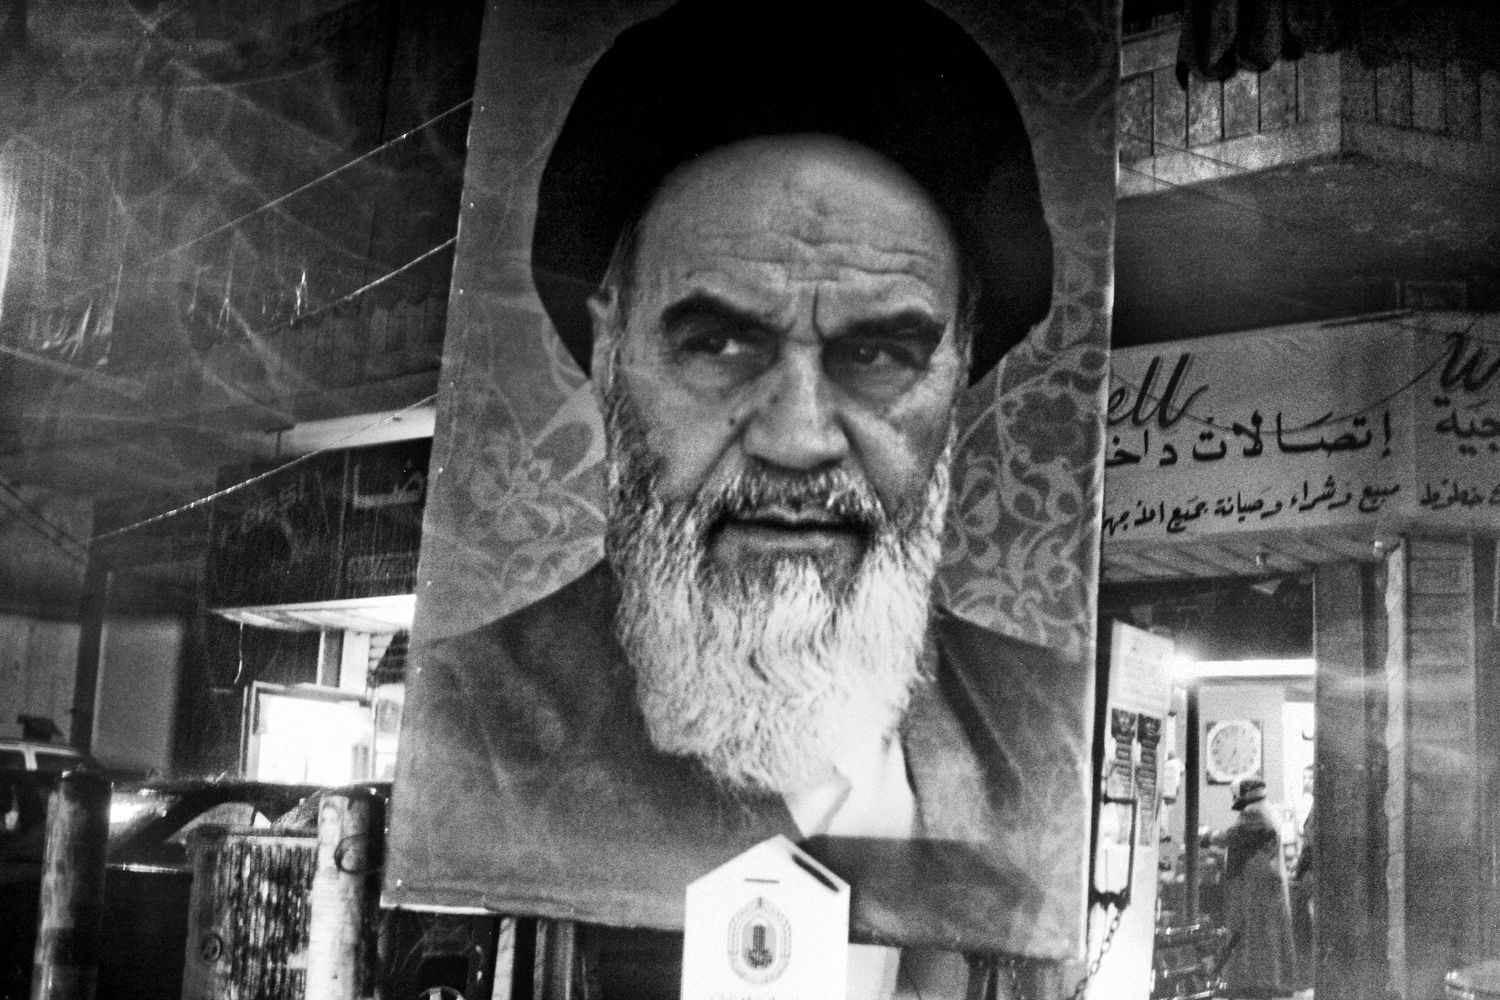 تغییراتی که «لبنان» بعد از انقلاب اسلامی ایران شاهد بود

امام موسی صدر و شیعیانی که هیچ نداشتند!